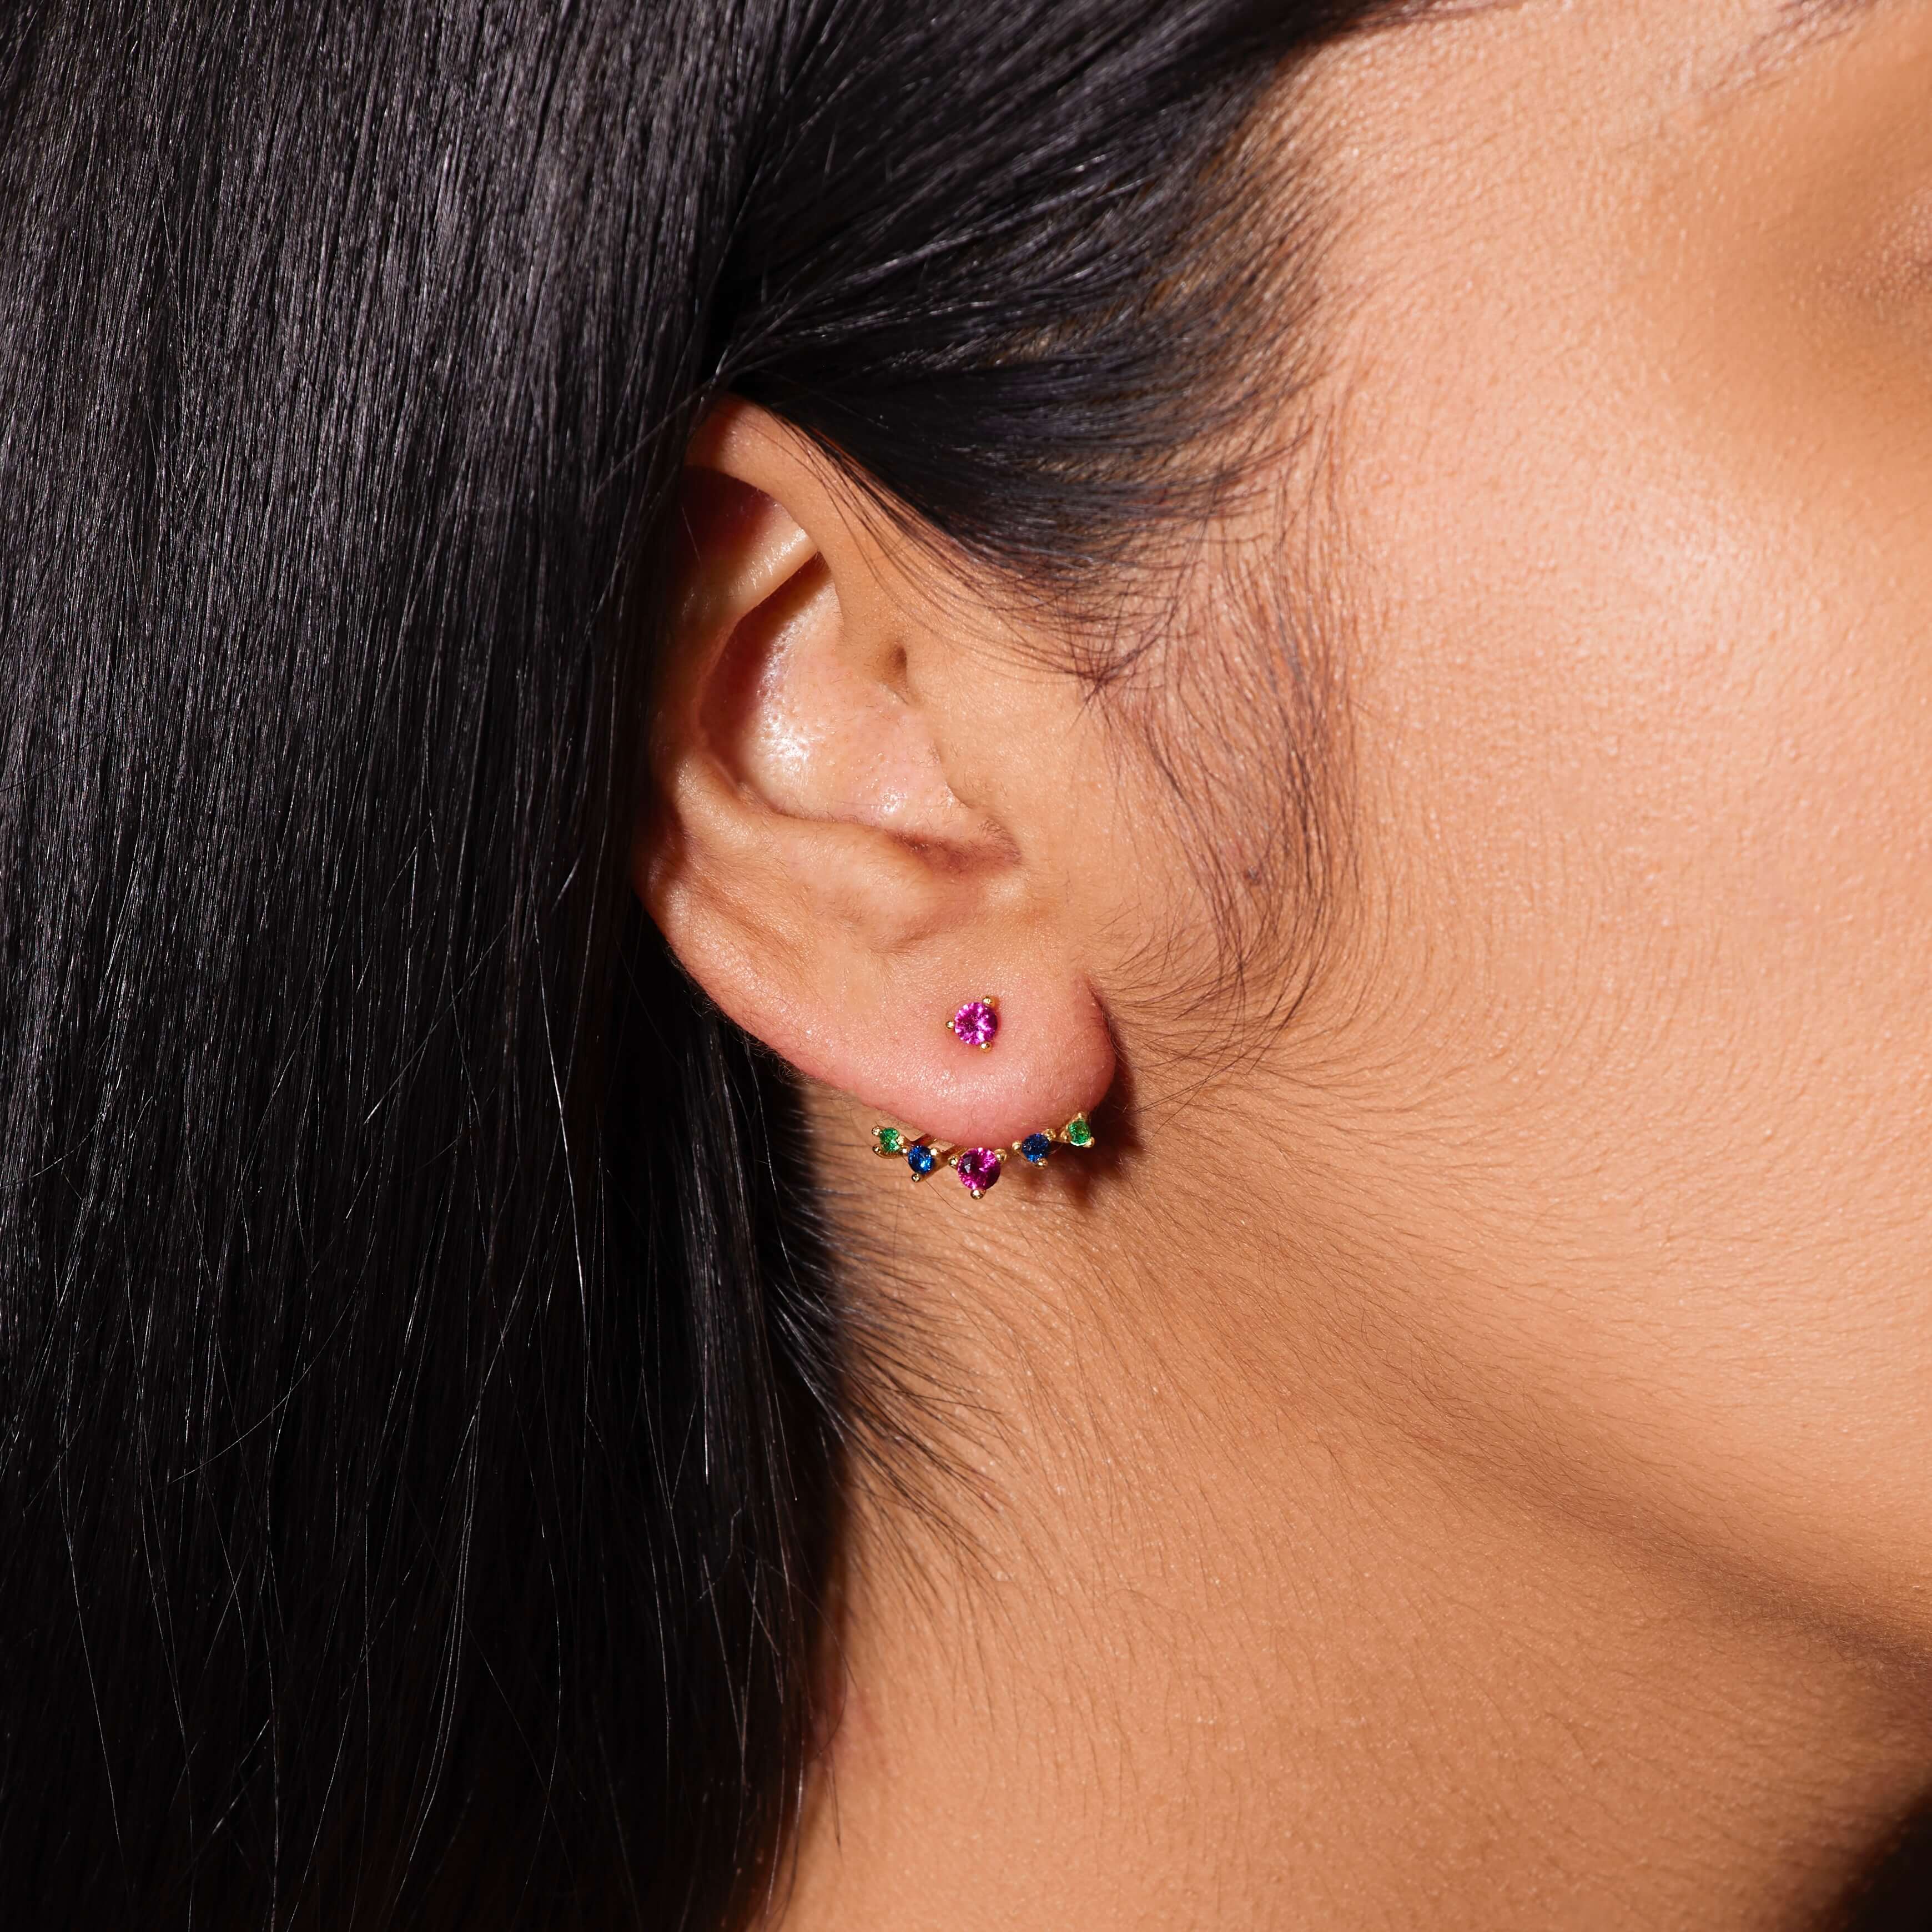 Bejeweled Earring